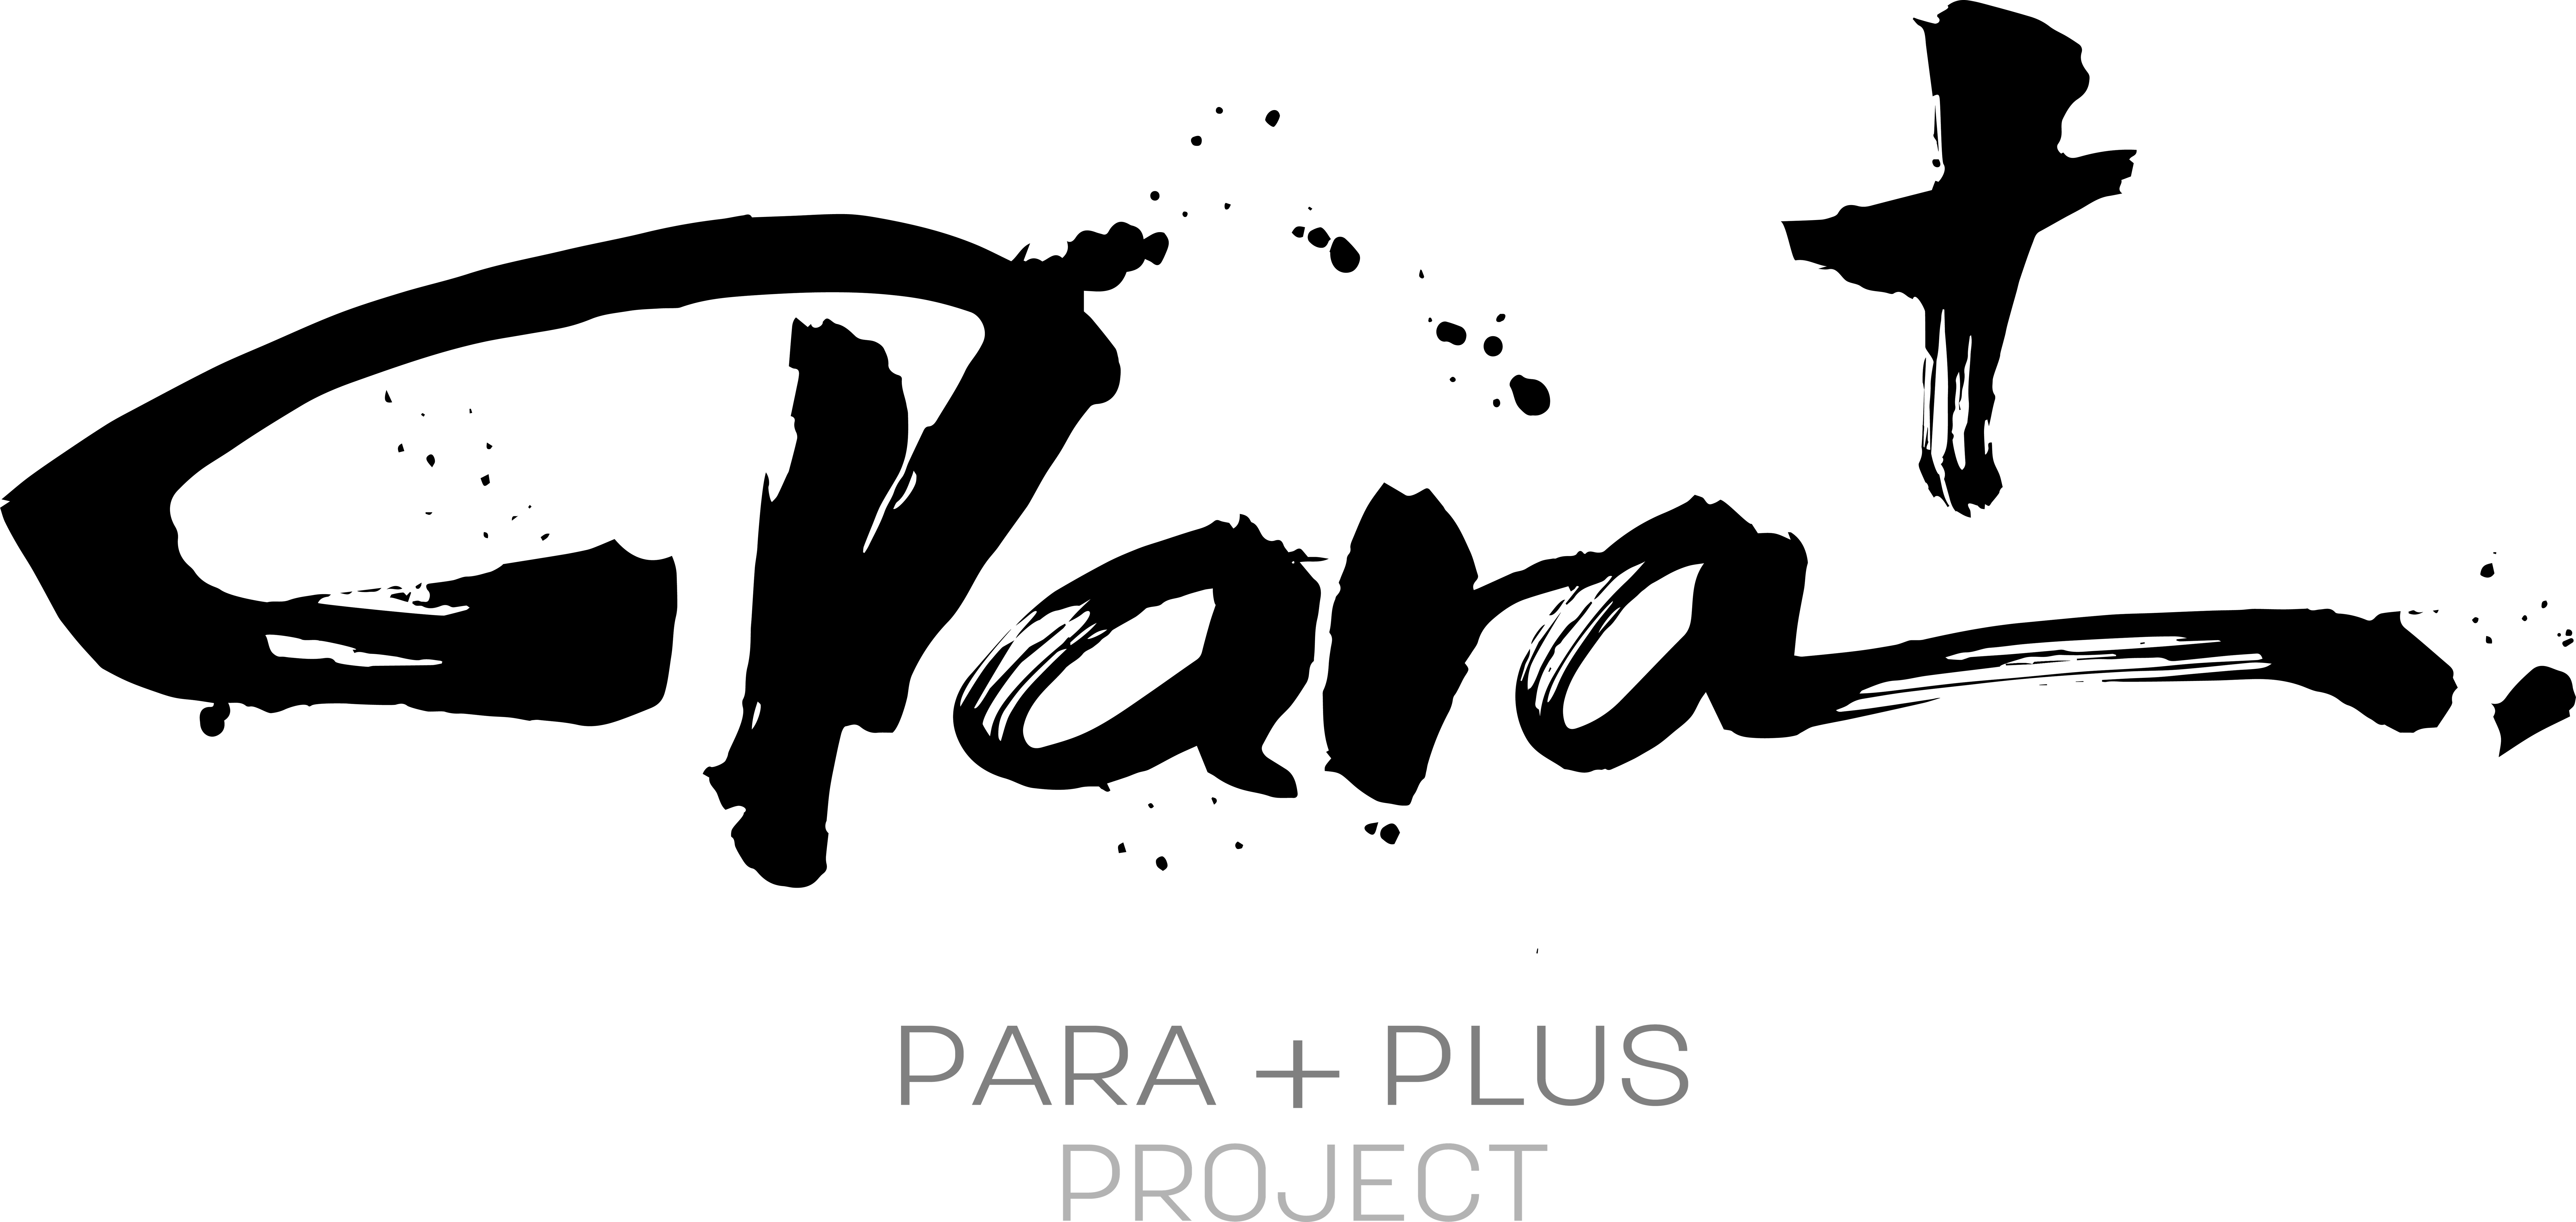 パラスポーツ応援プロジェクト Para Plus Project 公式特設サイトオープン 略 Para 読み パラプラス 株式会社版三のプレスリリース